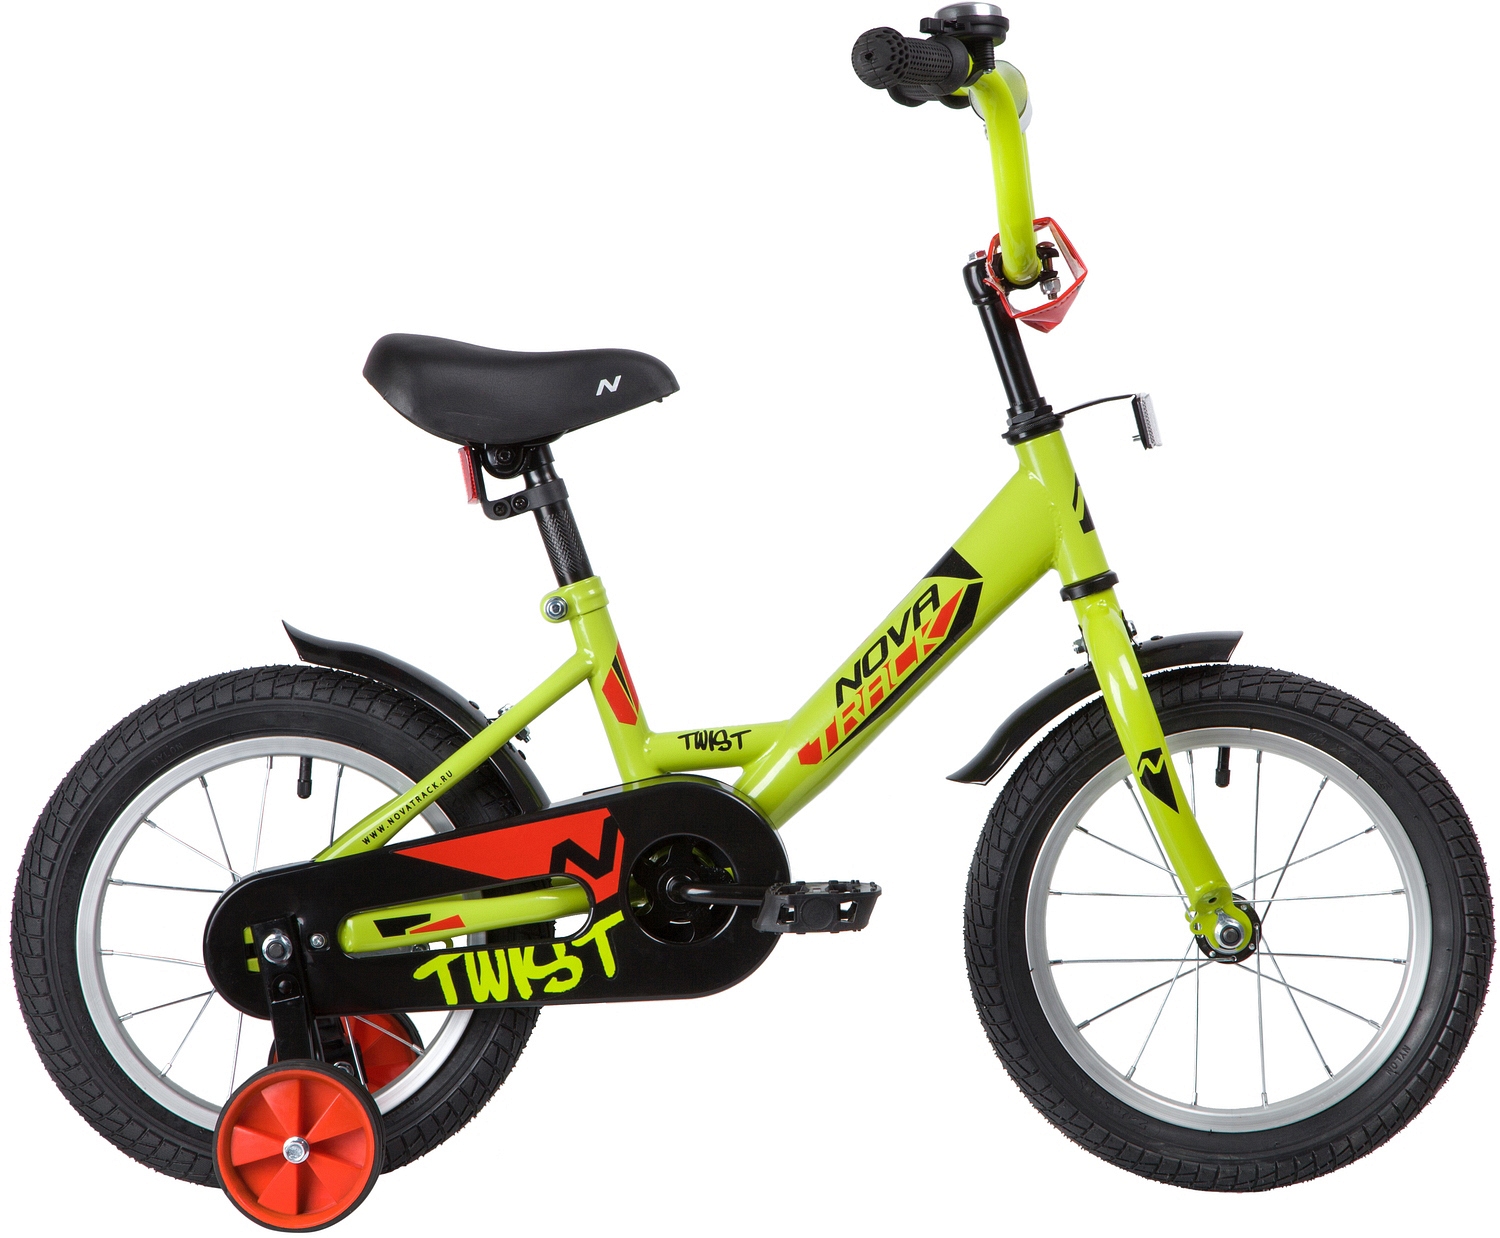  Отзывы о Детском велосипеде Novatrack Twist 14 2020